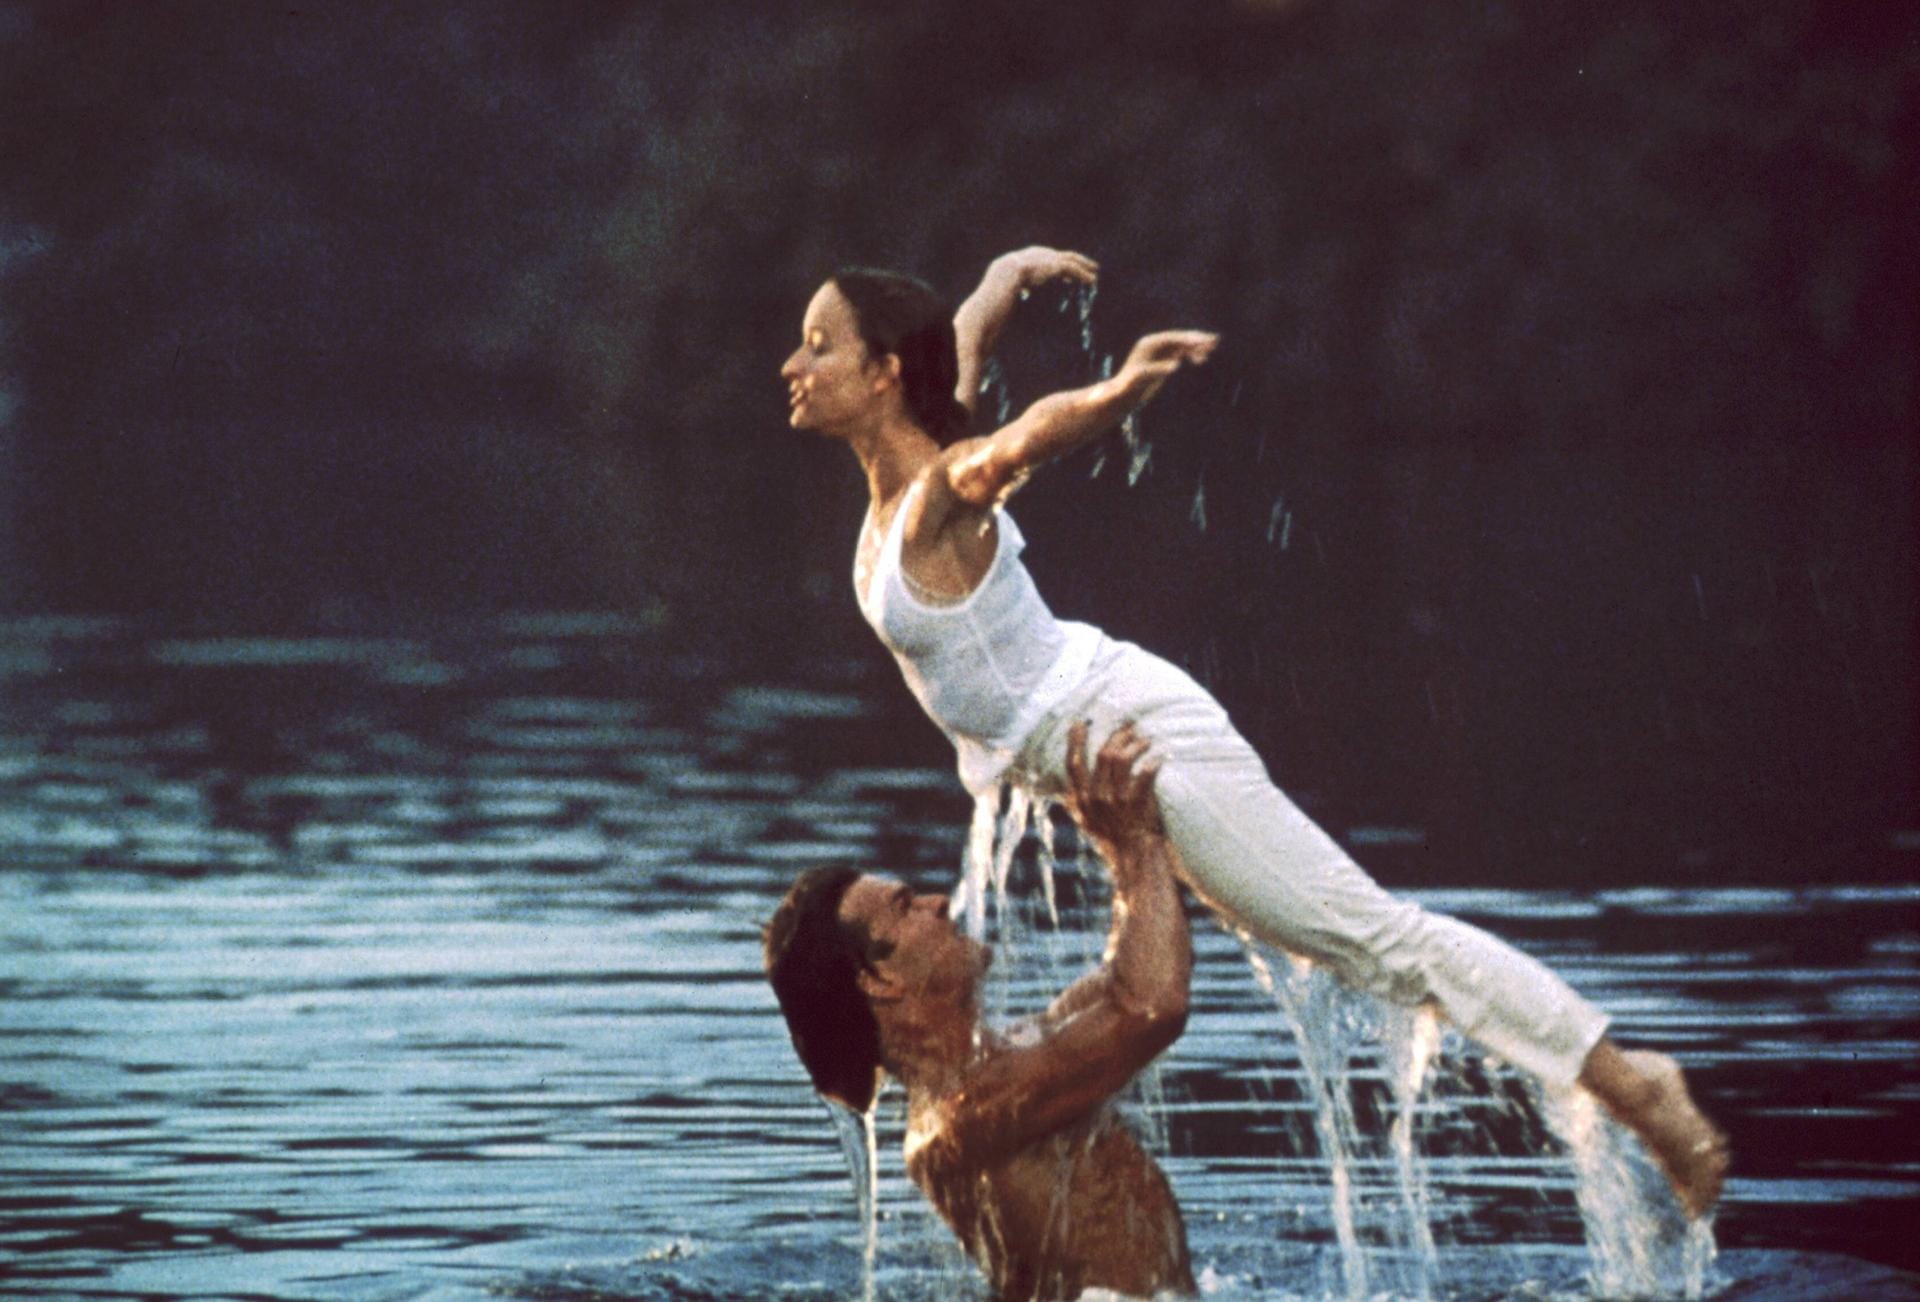 Üben im Wasser: Patrick Swayze trainiert in seiner Rolle als Tanzlehrer Johnny Castle mit Jennifer Grey alias Baby für die berühmte Hebefigur.